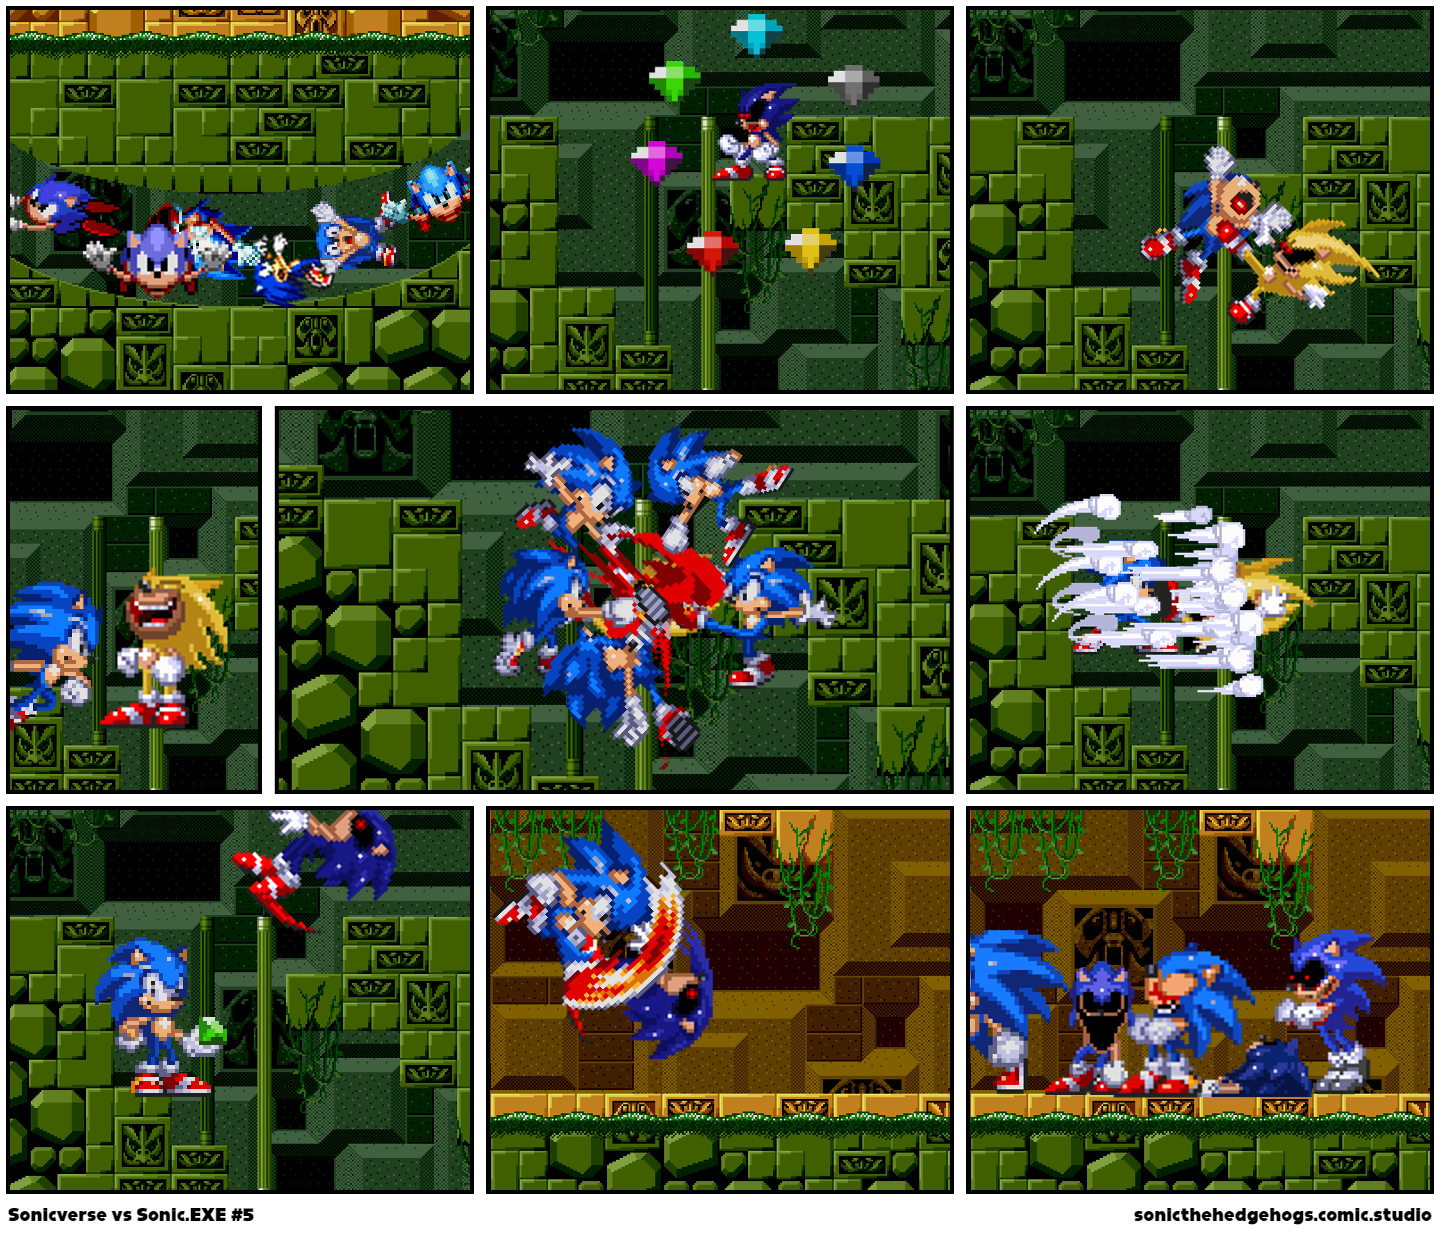 Sonicverse vs Sonic.EXE #5